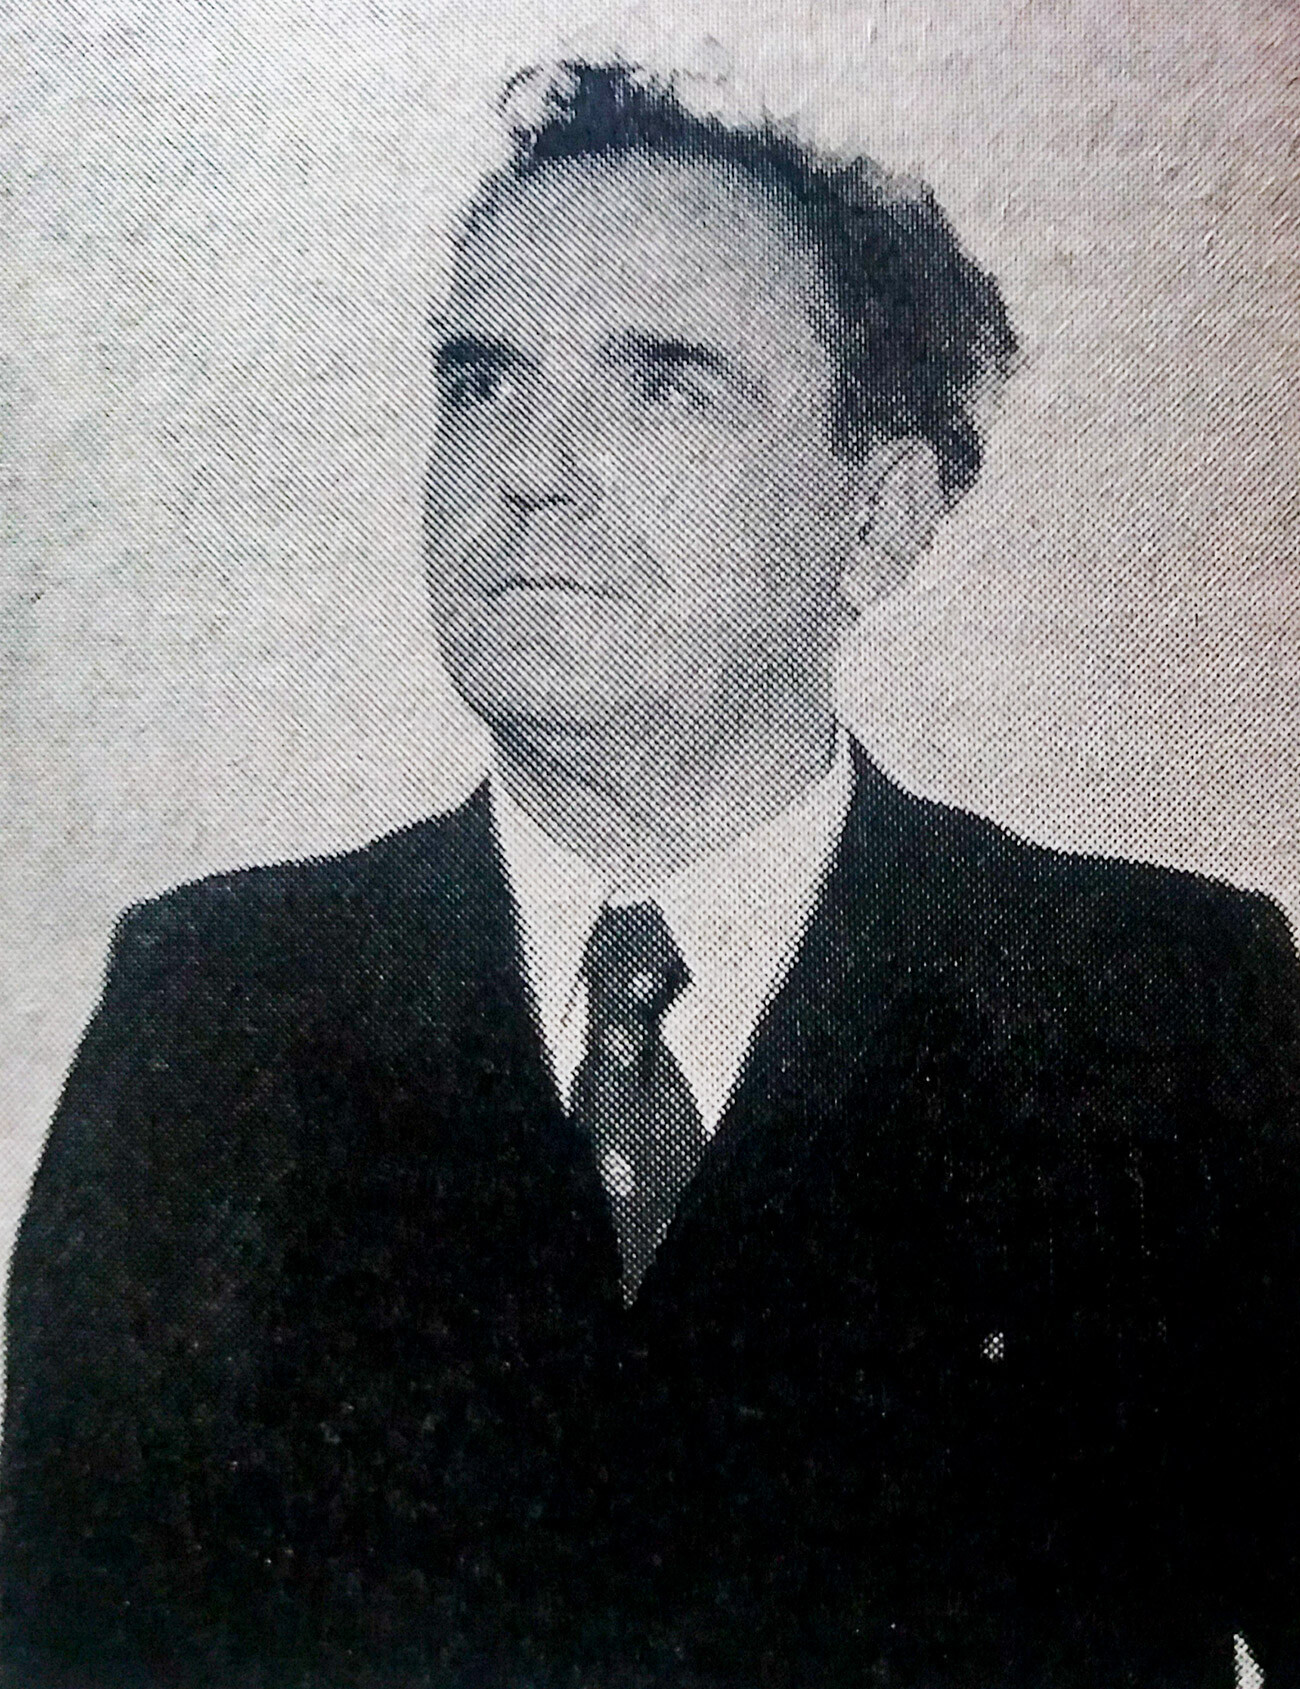  Albretch no início dos anos 1950.
